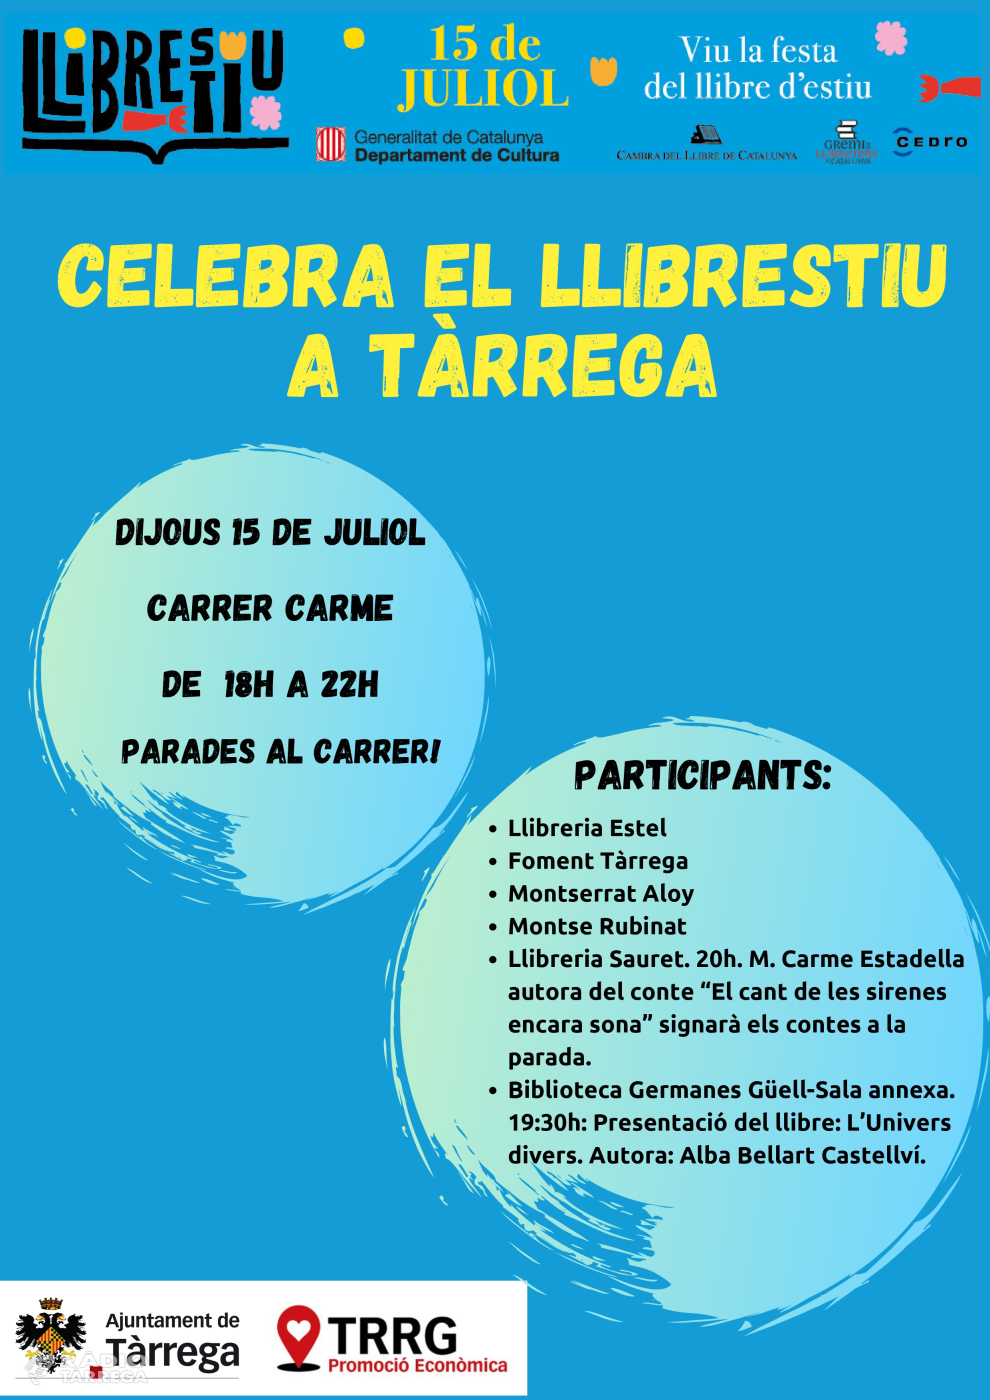 Tàrrega celebra la nova festa Llibrestiu el dijous 15 de juliol al carrer del Carme